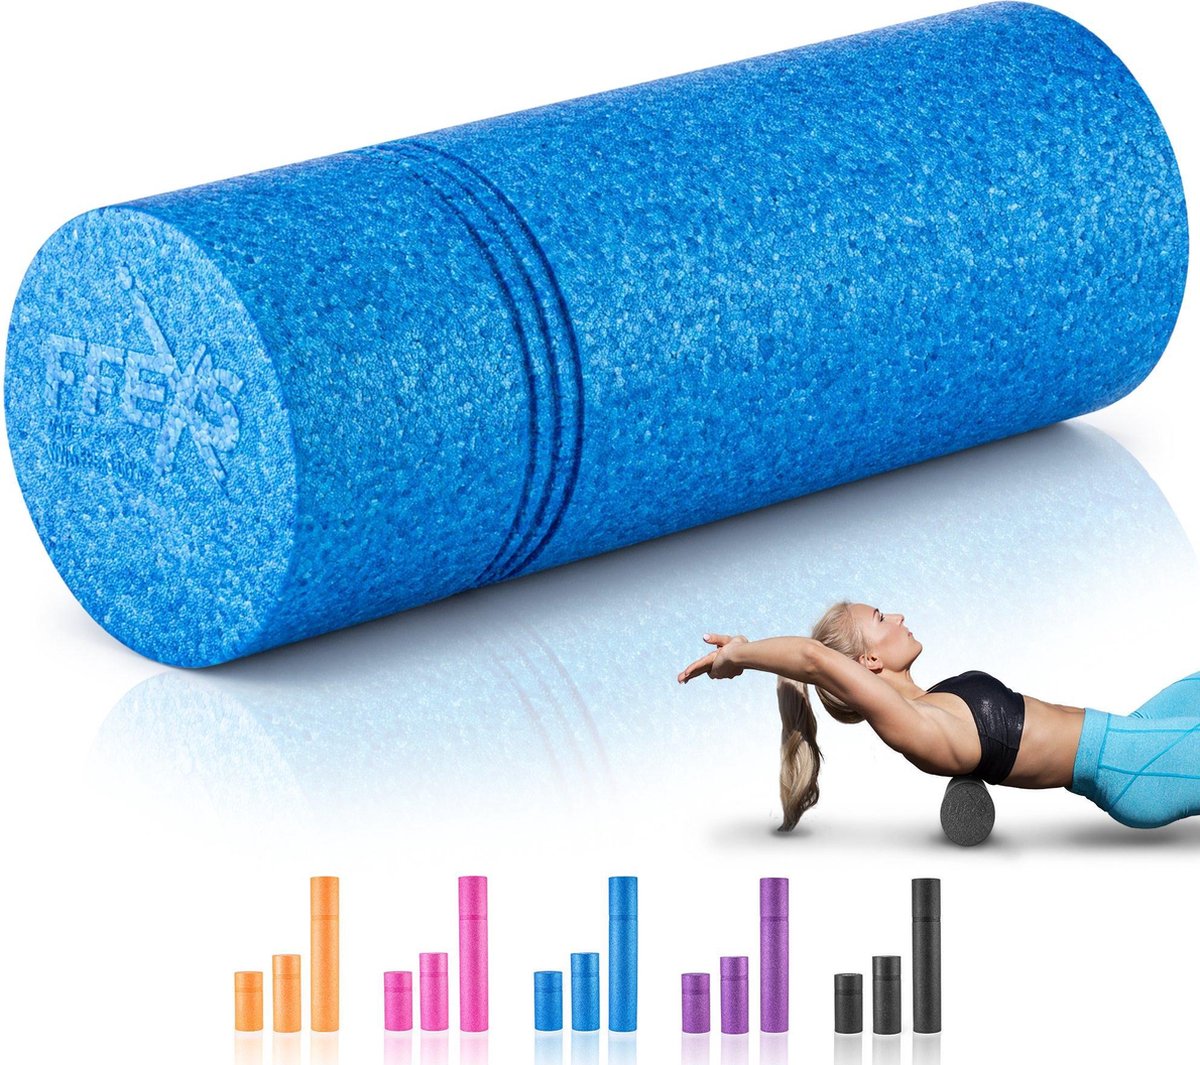 FFEXS Foam Roller - Therapie & Massage voor rug benen kuiten billen dijen - Perfecte zelfmassage voor sport fitness [Hard] - 40 CM - Blauw